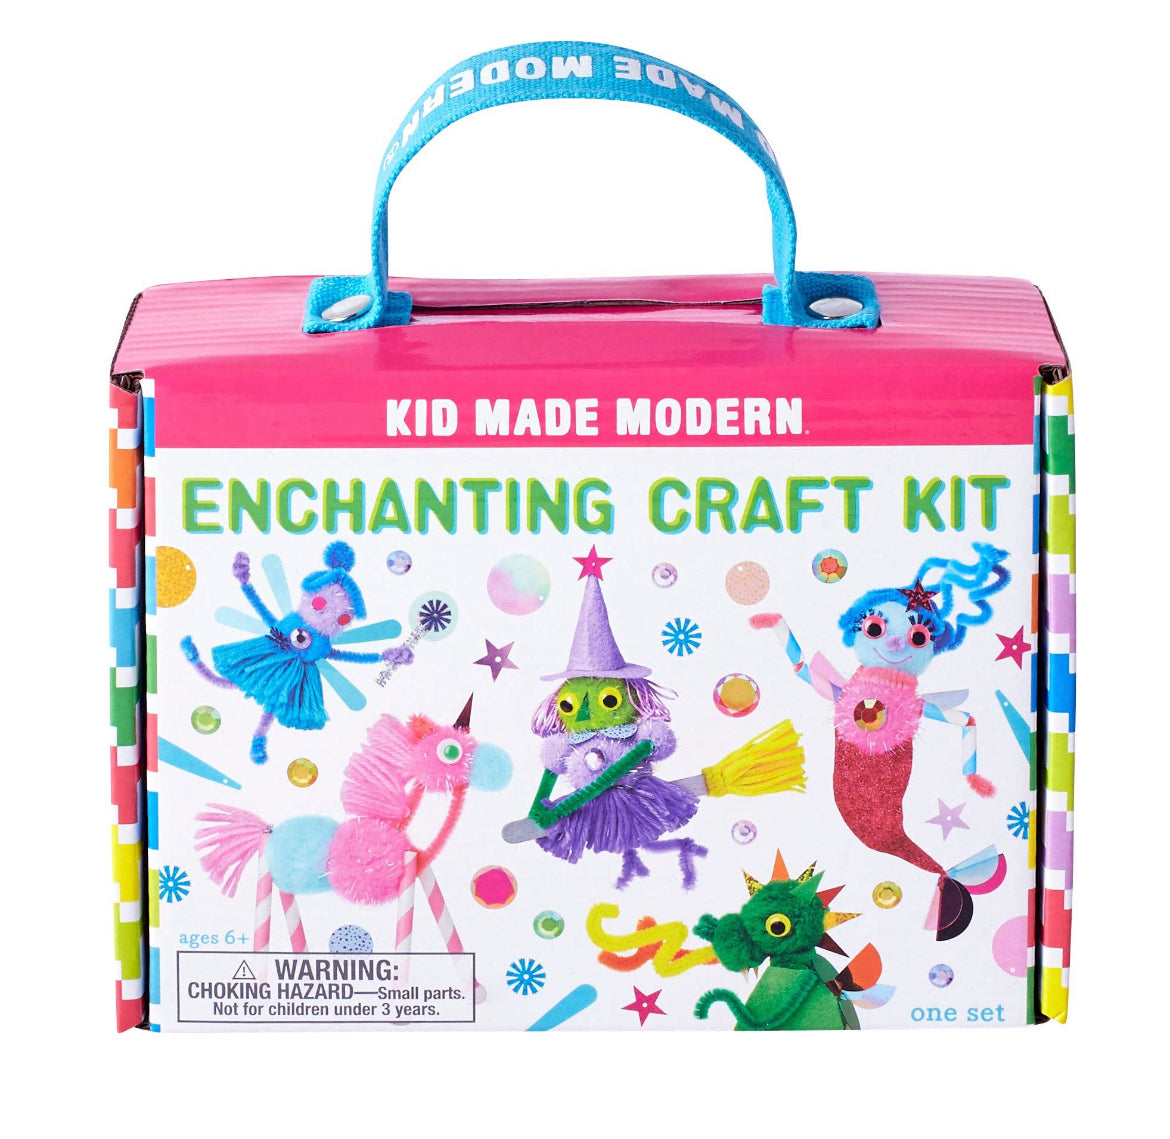 Kid made modern Enchanted craft kit